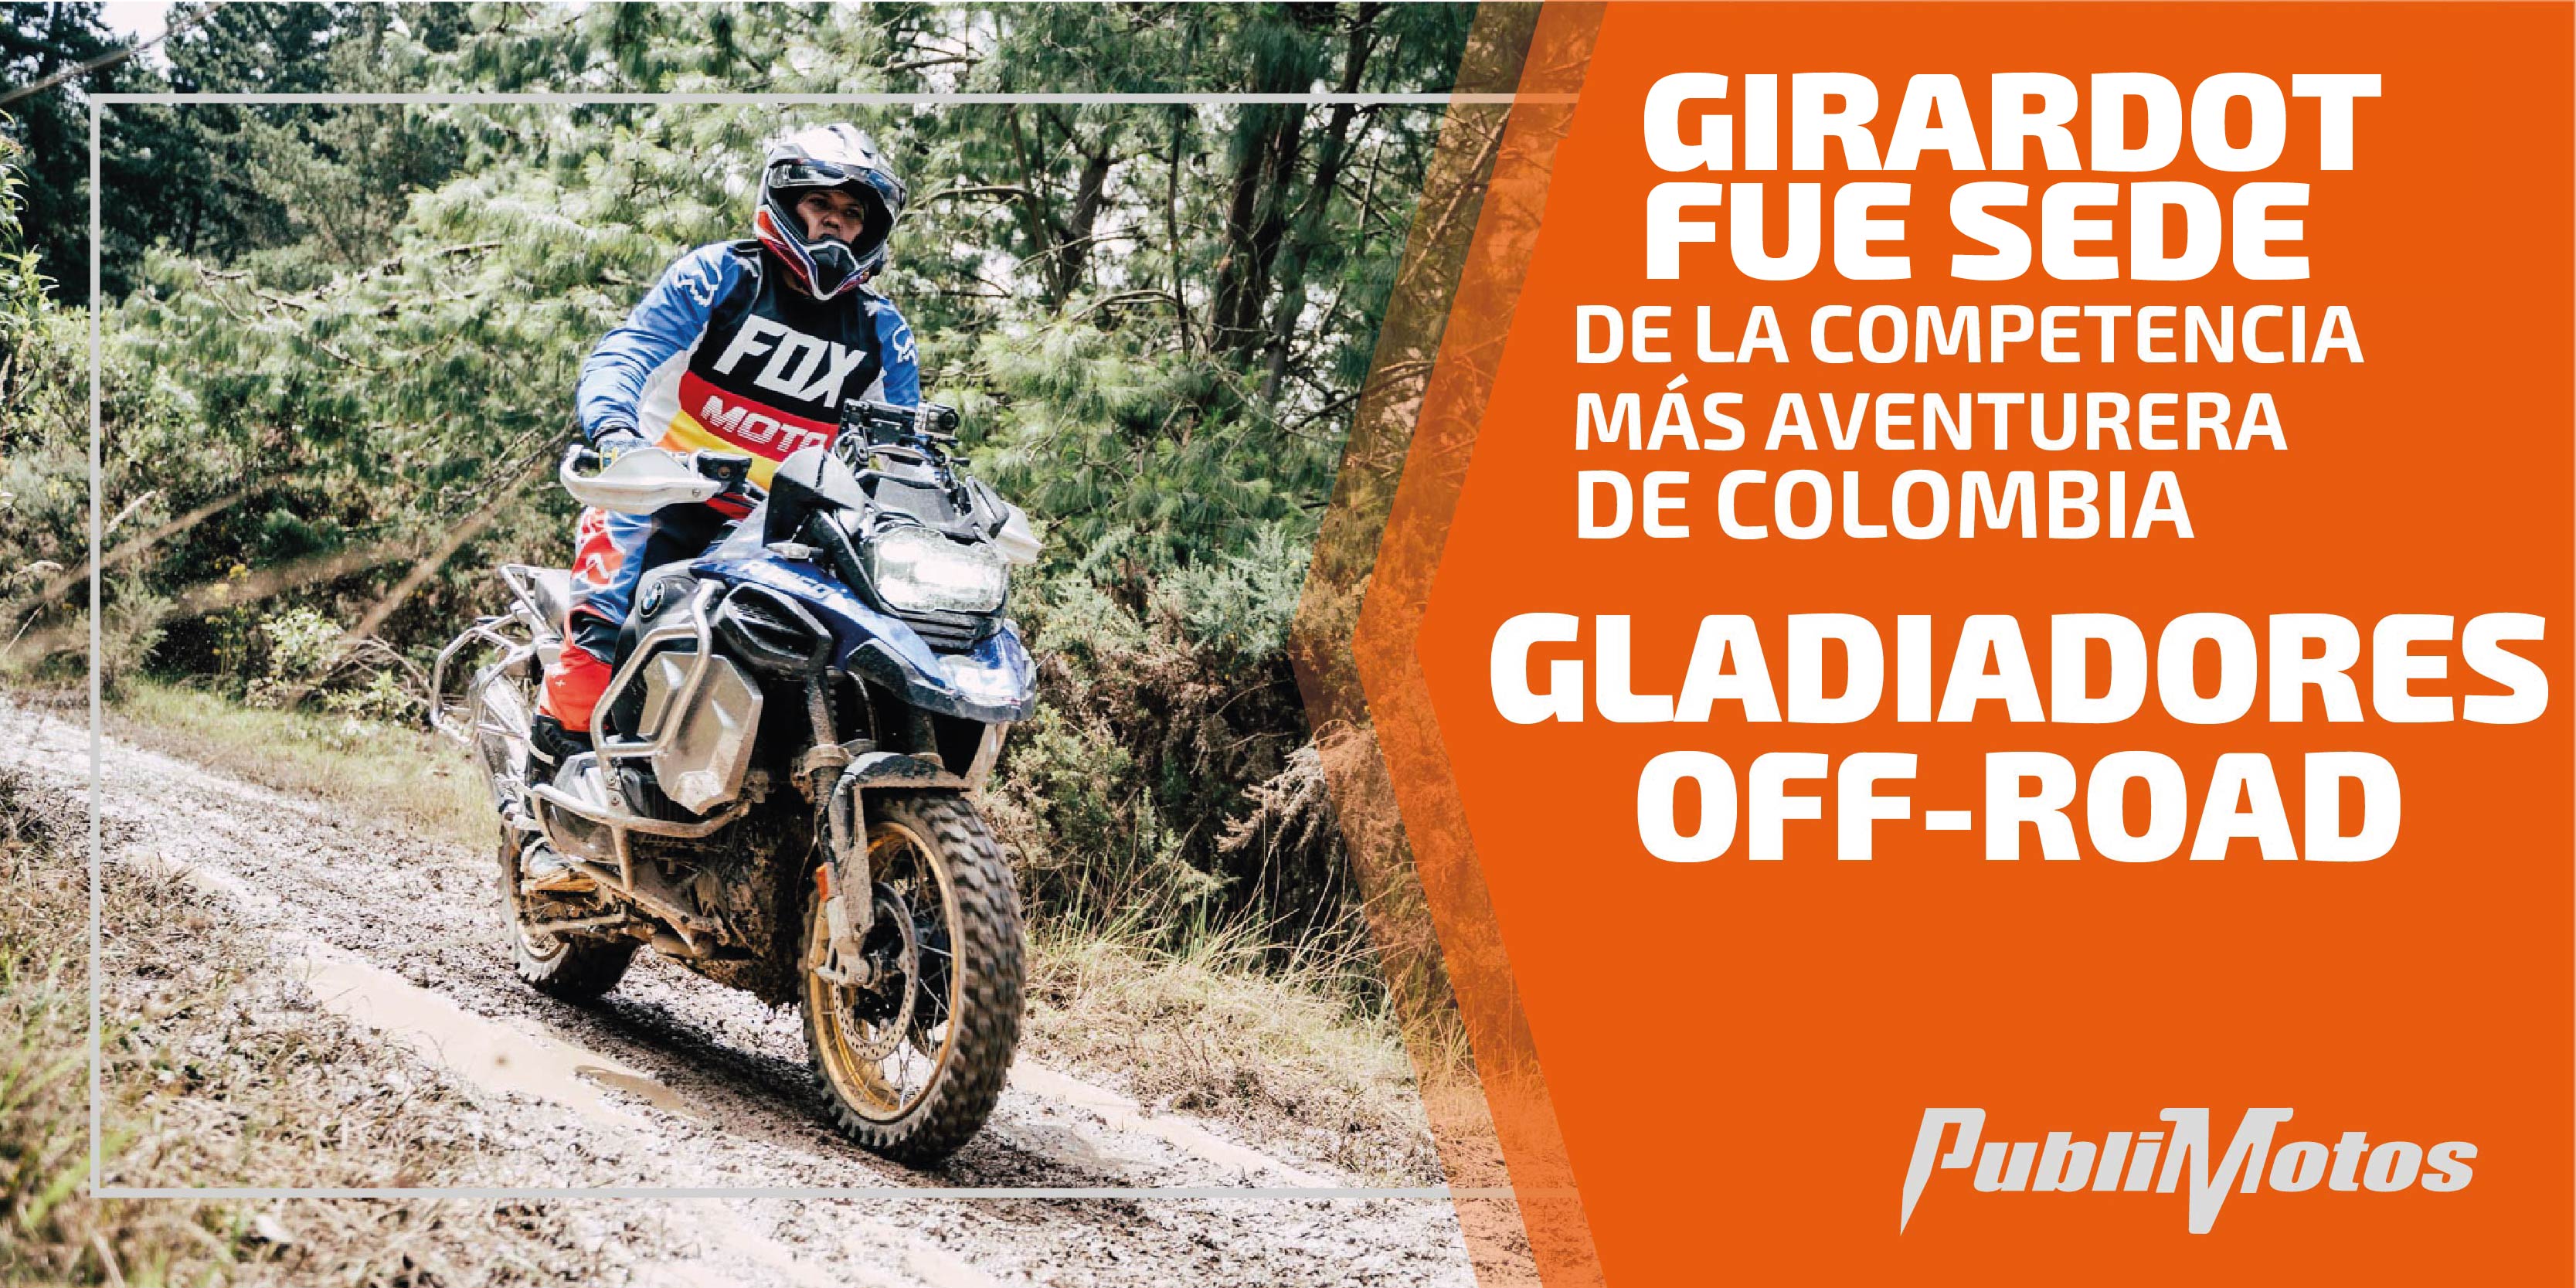 Girardot fue sede de la competencia más aventurera de Colombia |Gladiadores Off Road